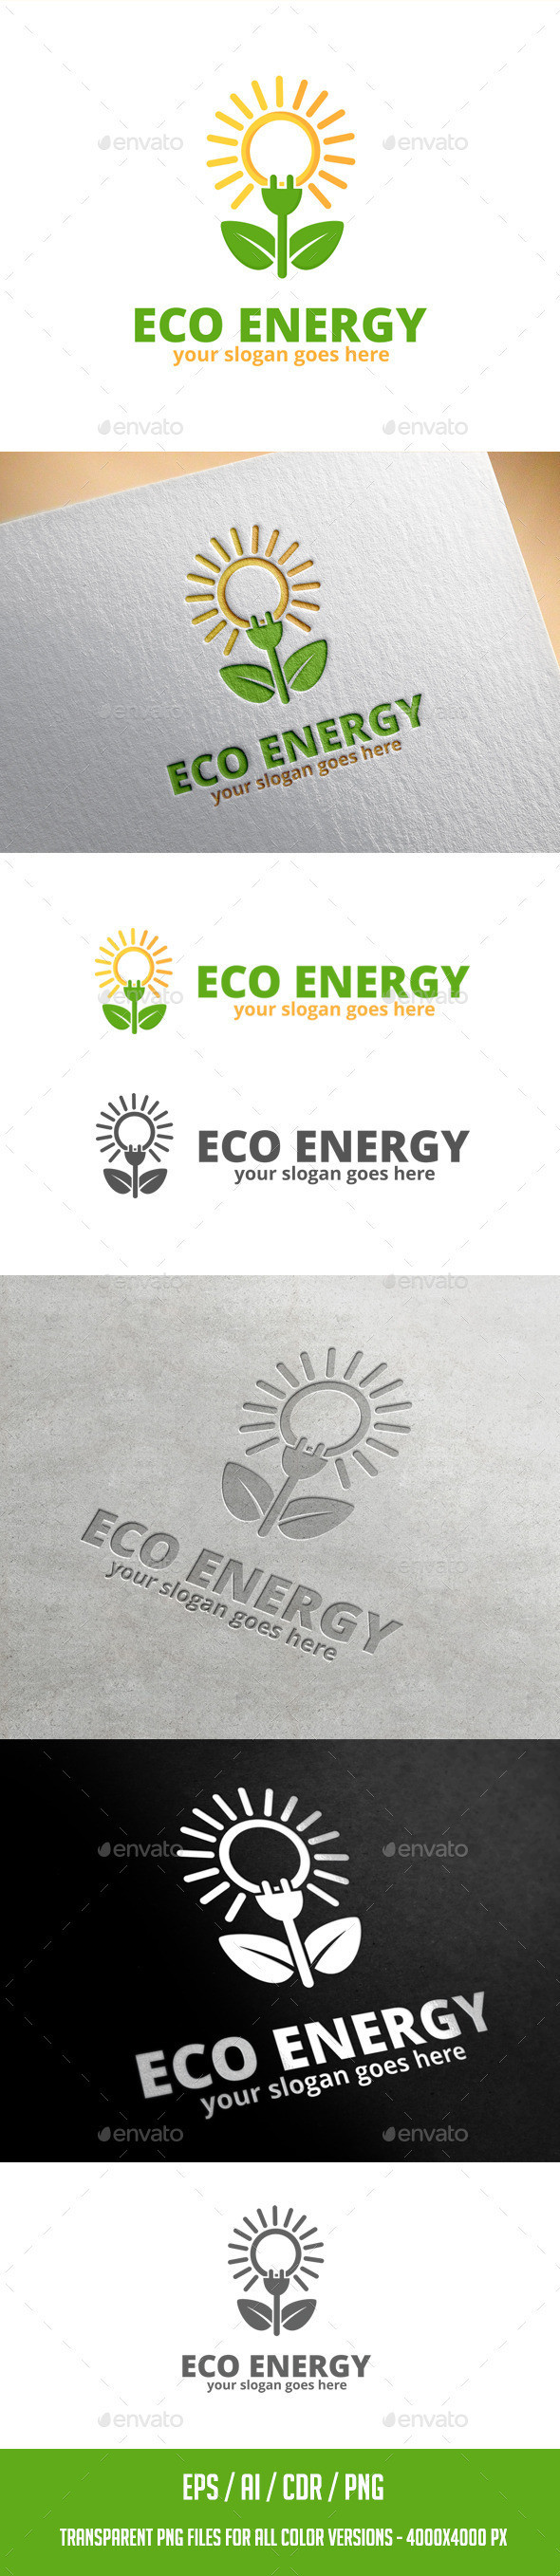 Eco energy logo preview